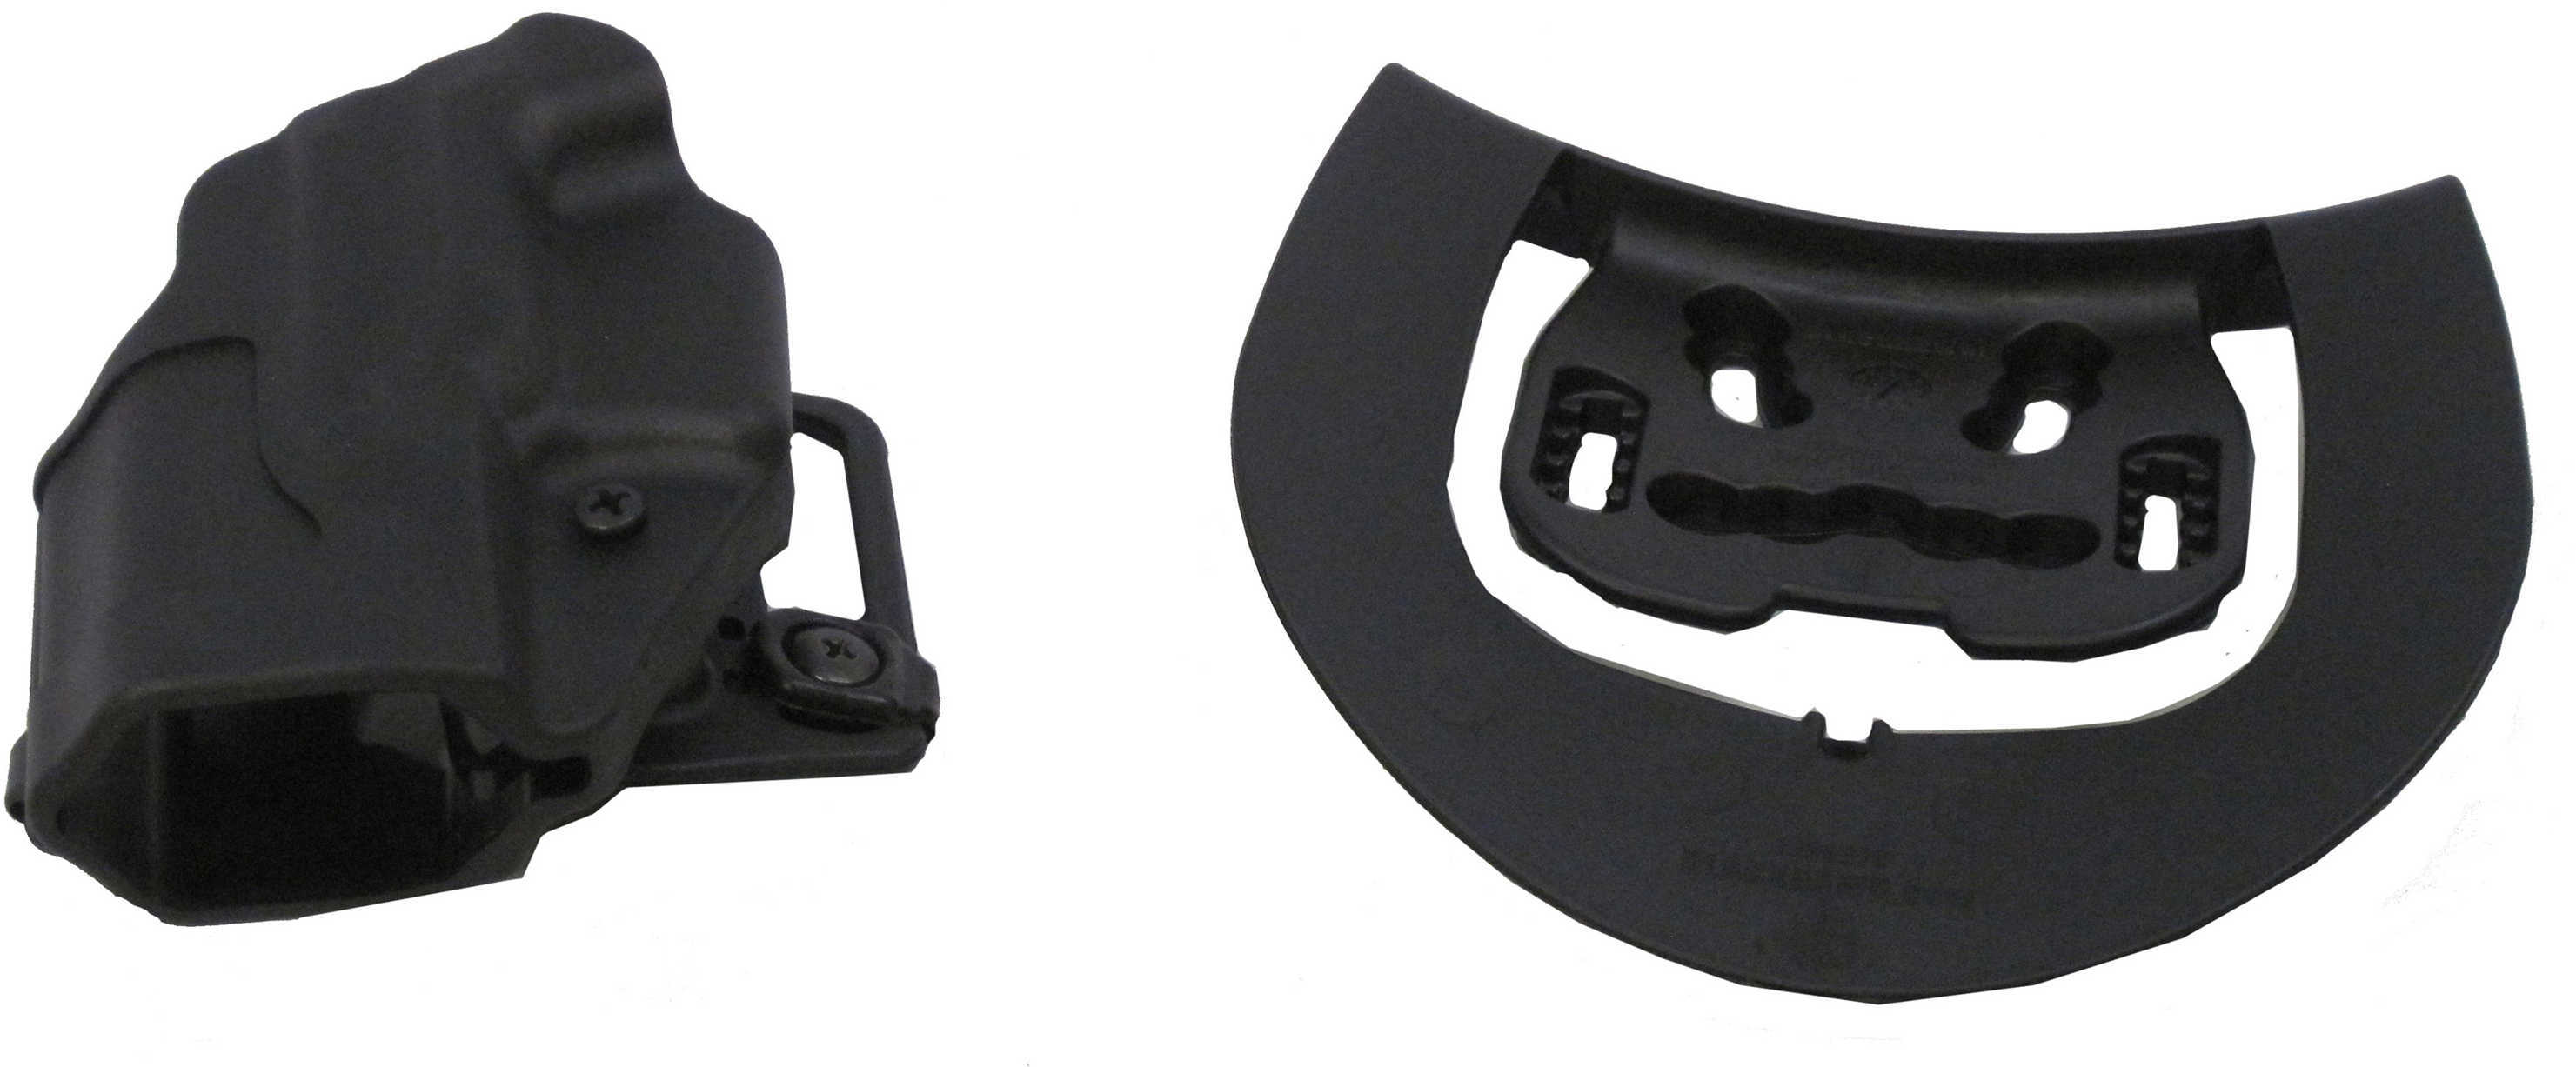 BlackHawk Products Group Sportster Standard Belt & Paddle for Glock 26/27/33 Left Hand 415601BK-L